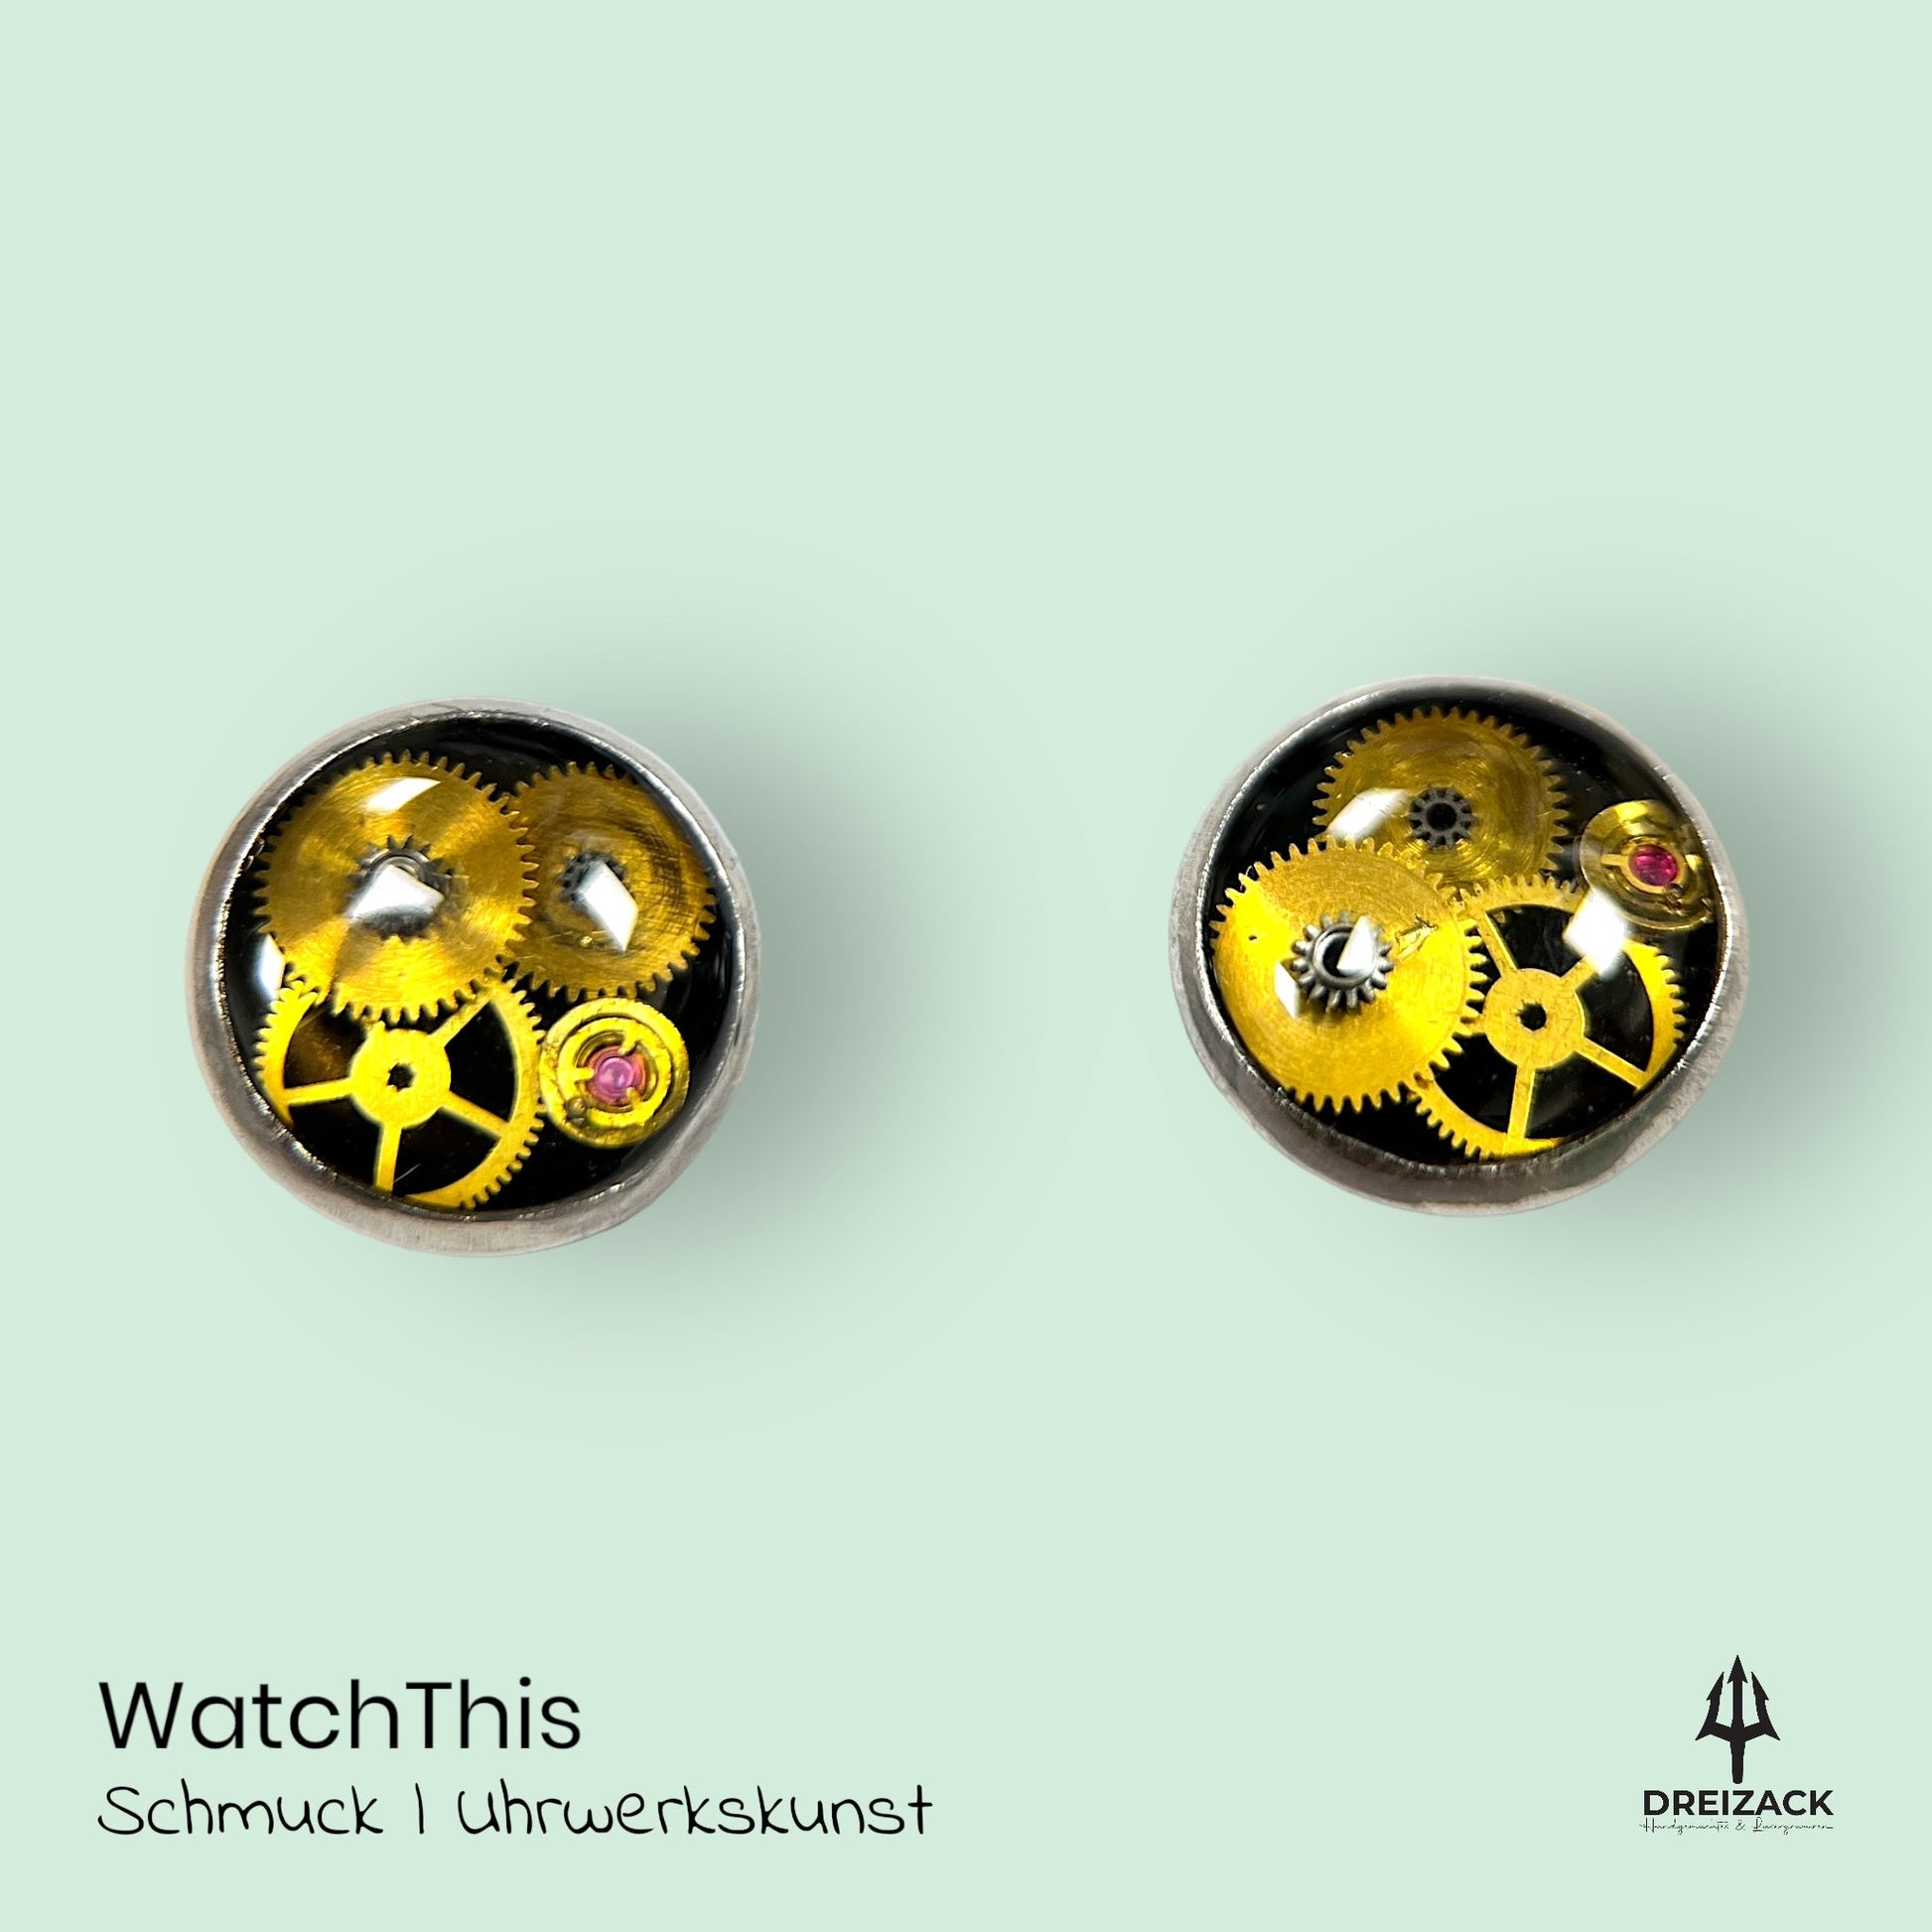 Ohrstecker von WatchThis - Zeitlose Eleganz aus Uhrwerken 8mm | Cassy Schmuck WatchThis oesterreich handgemachte geschenke in wien